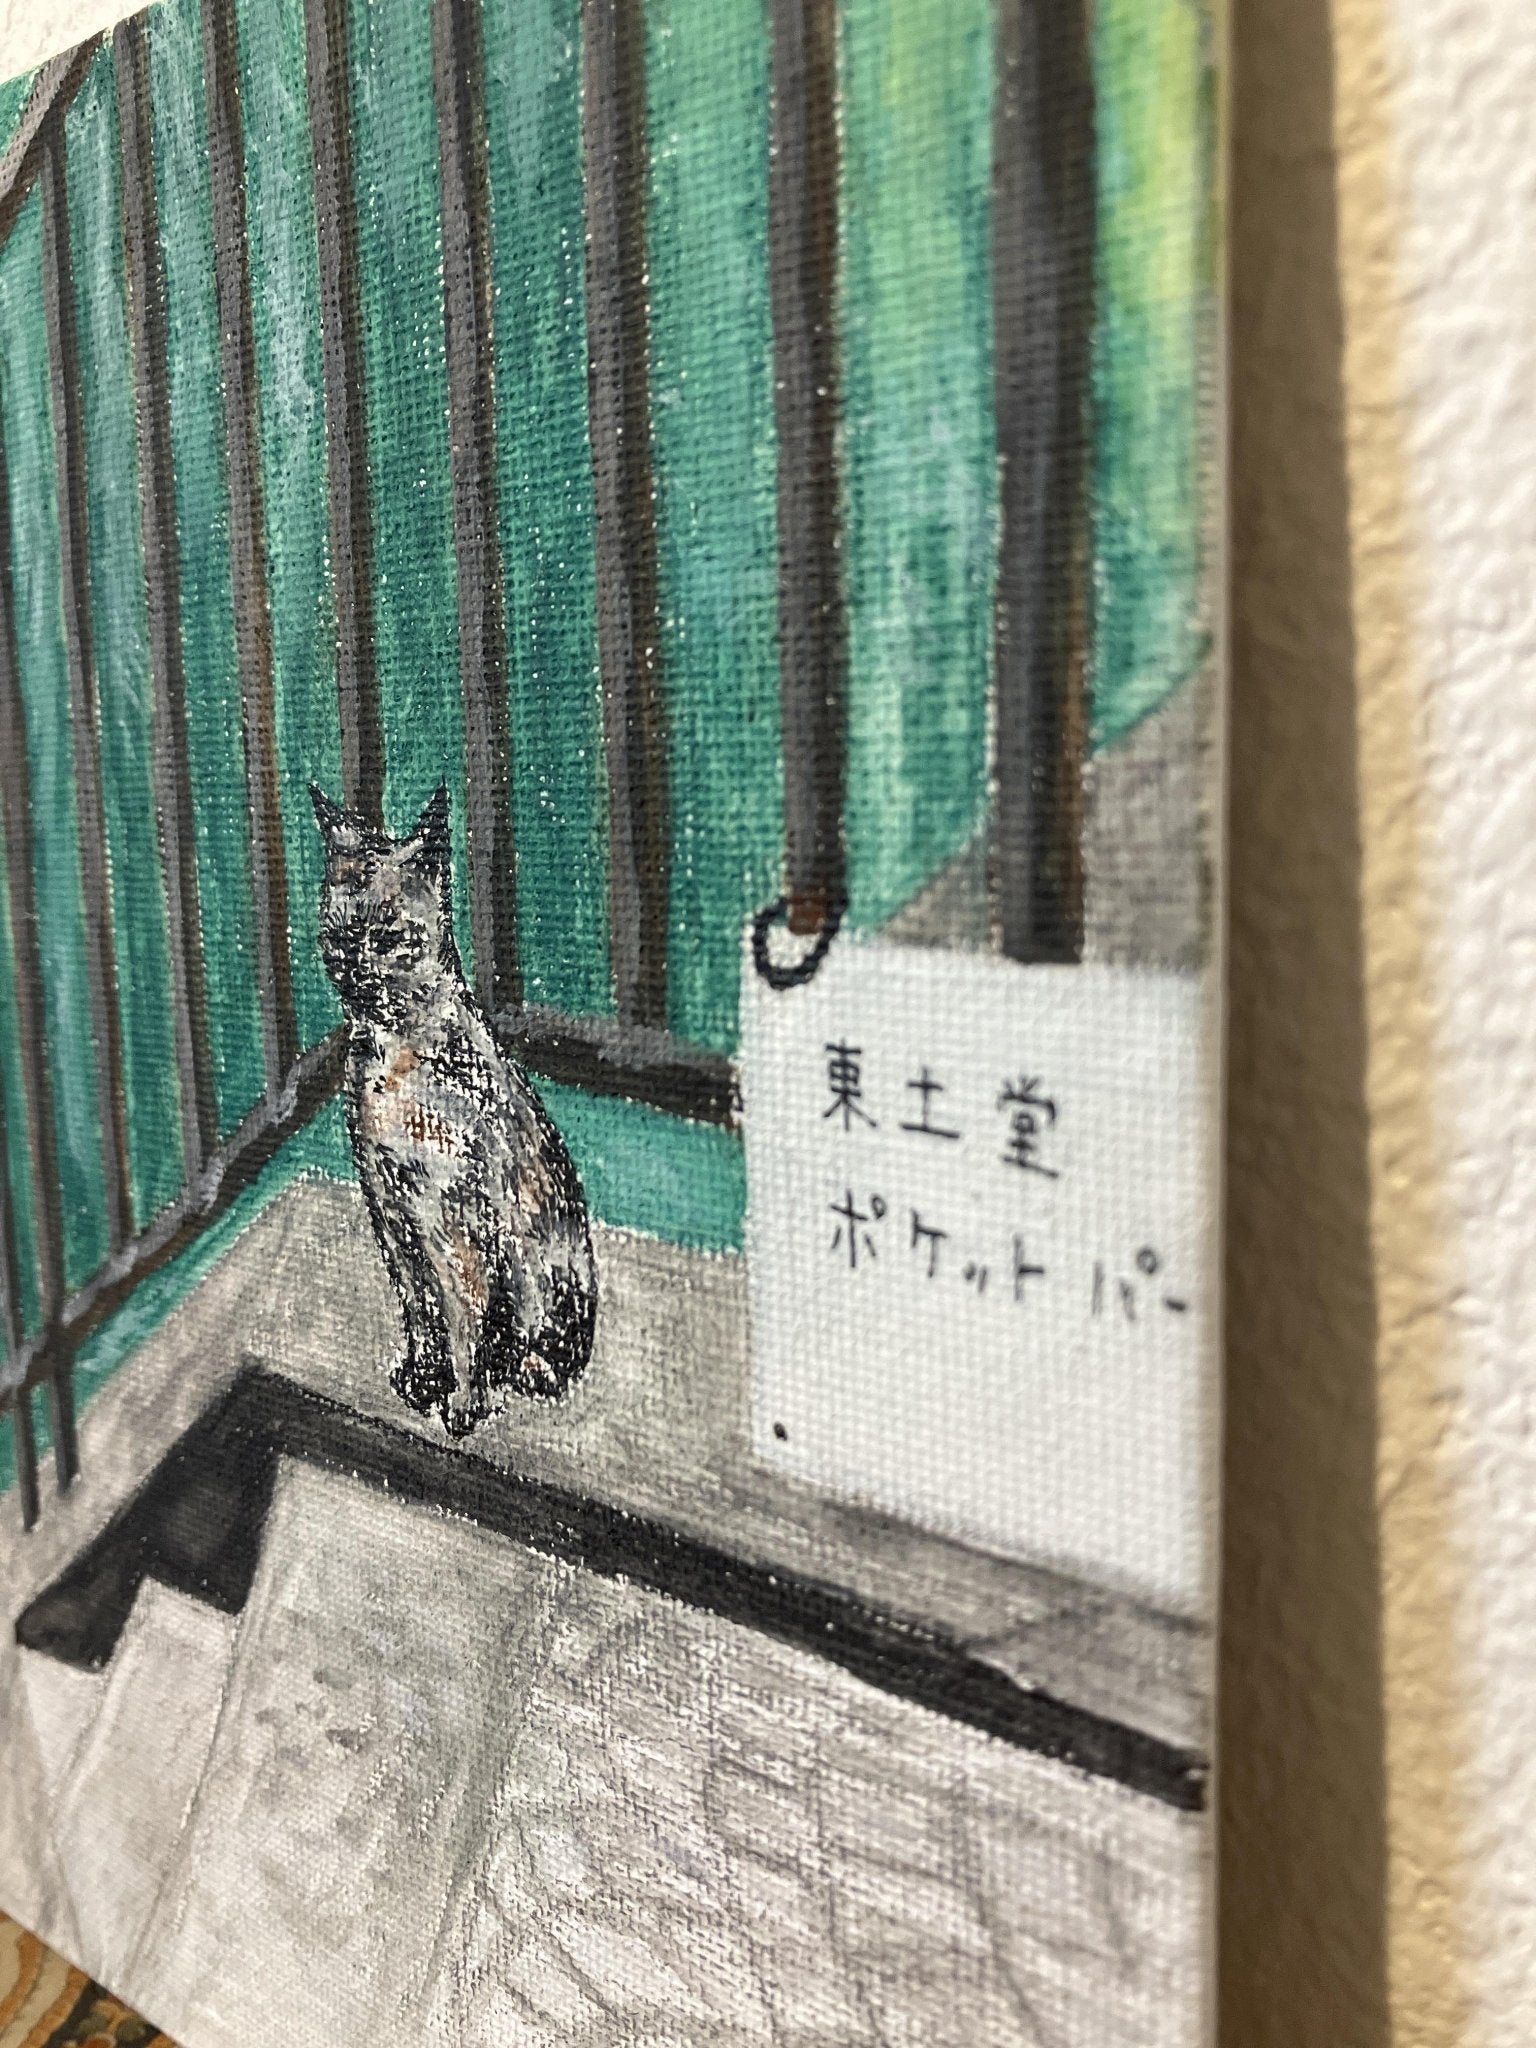 尾道の猫 - FROM ARTIST